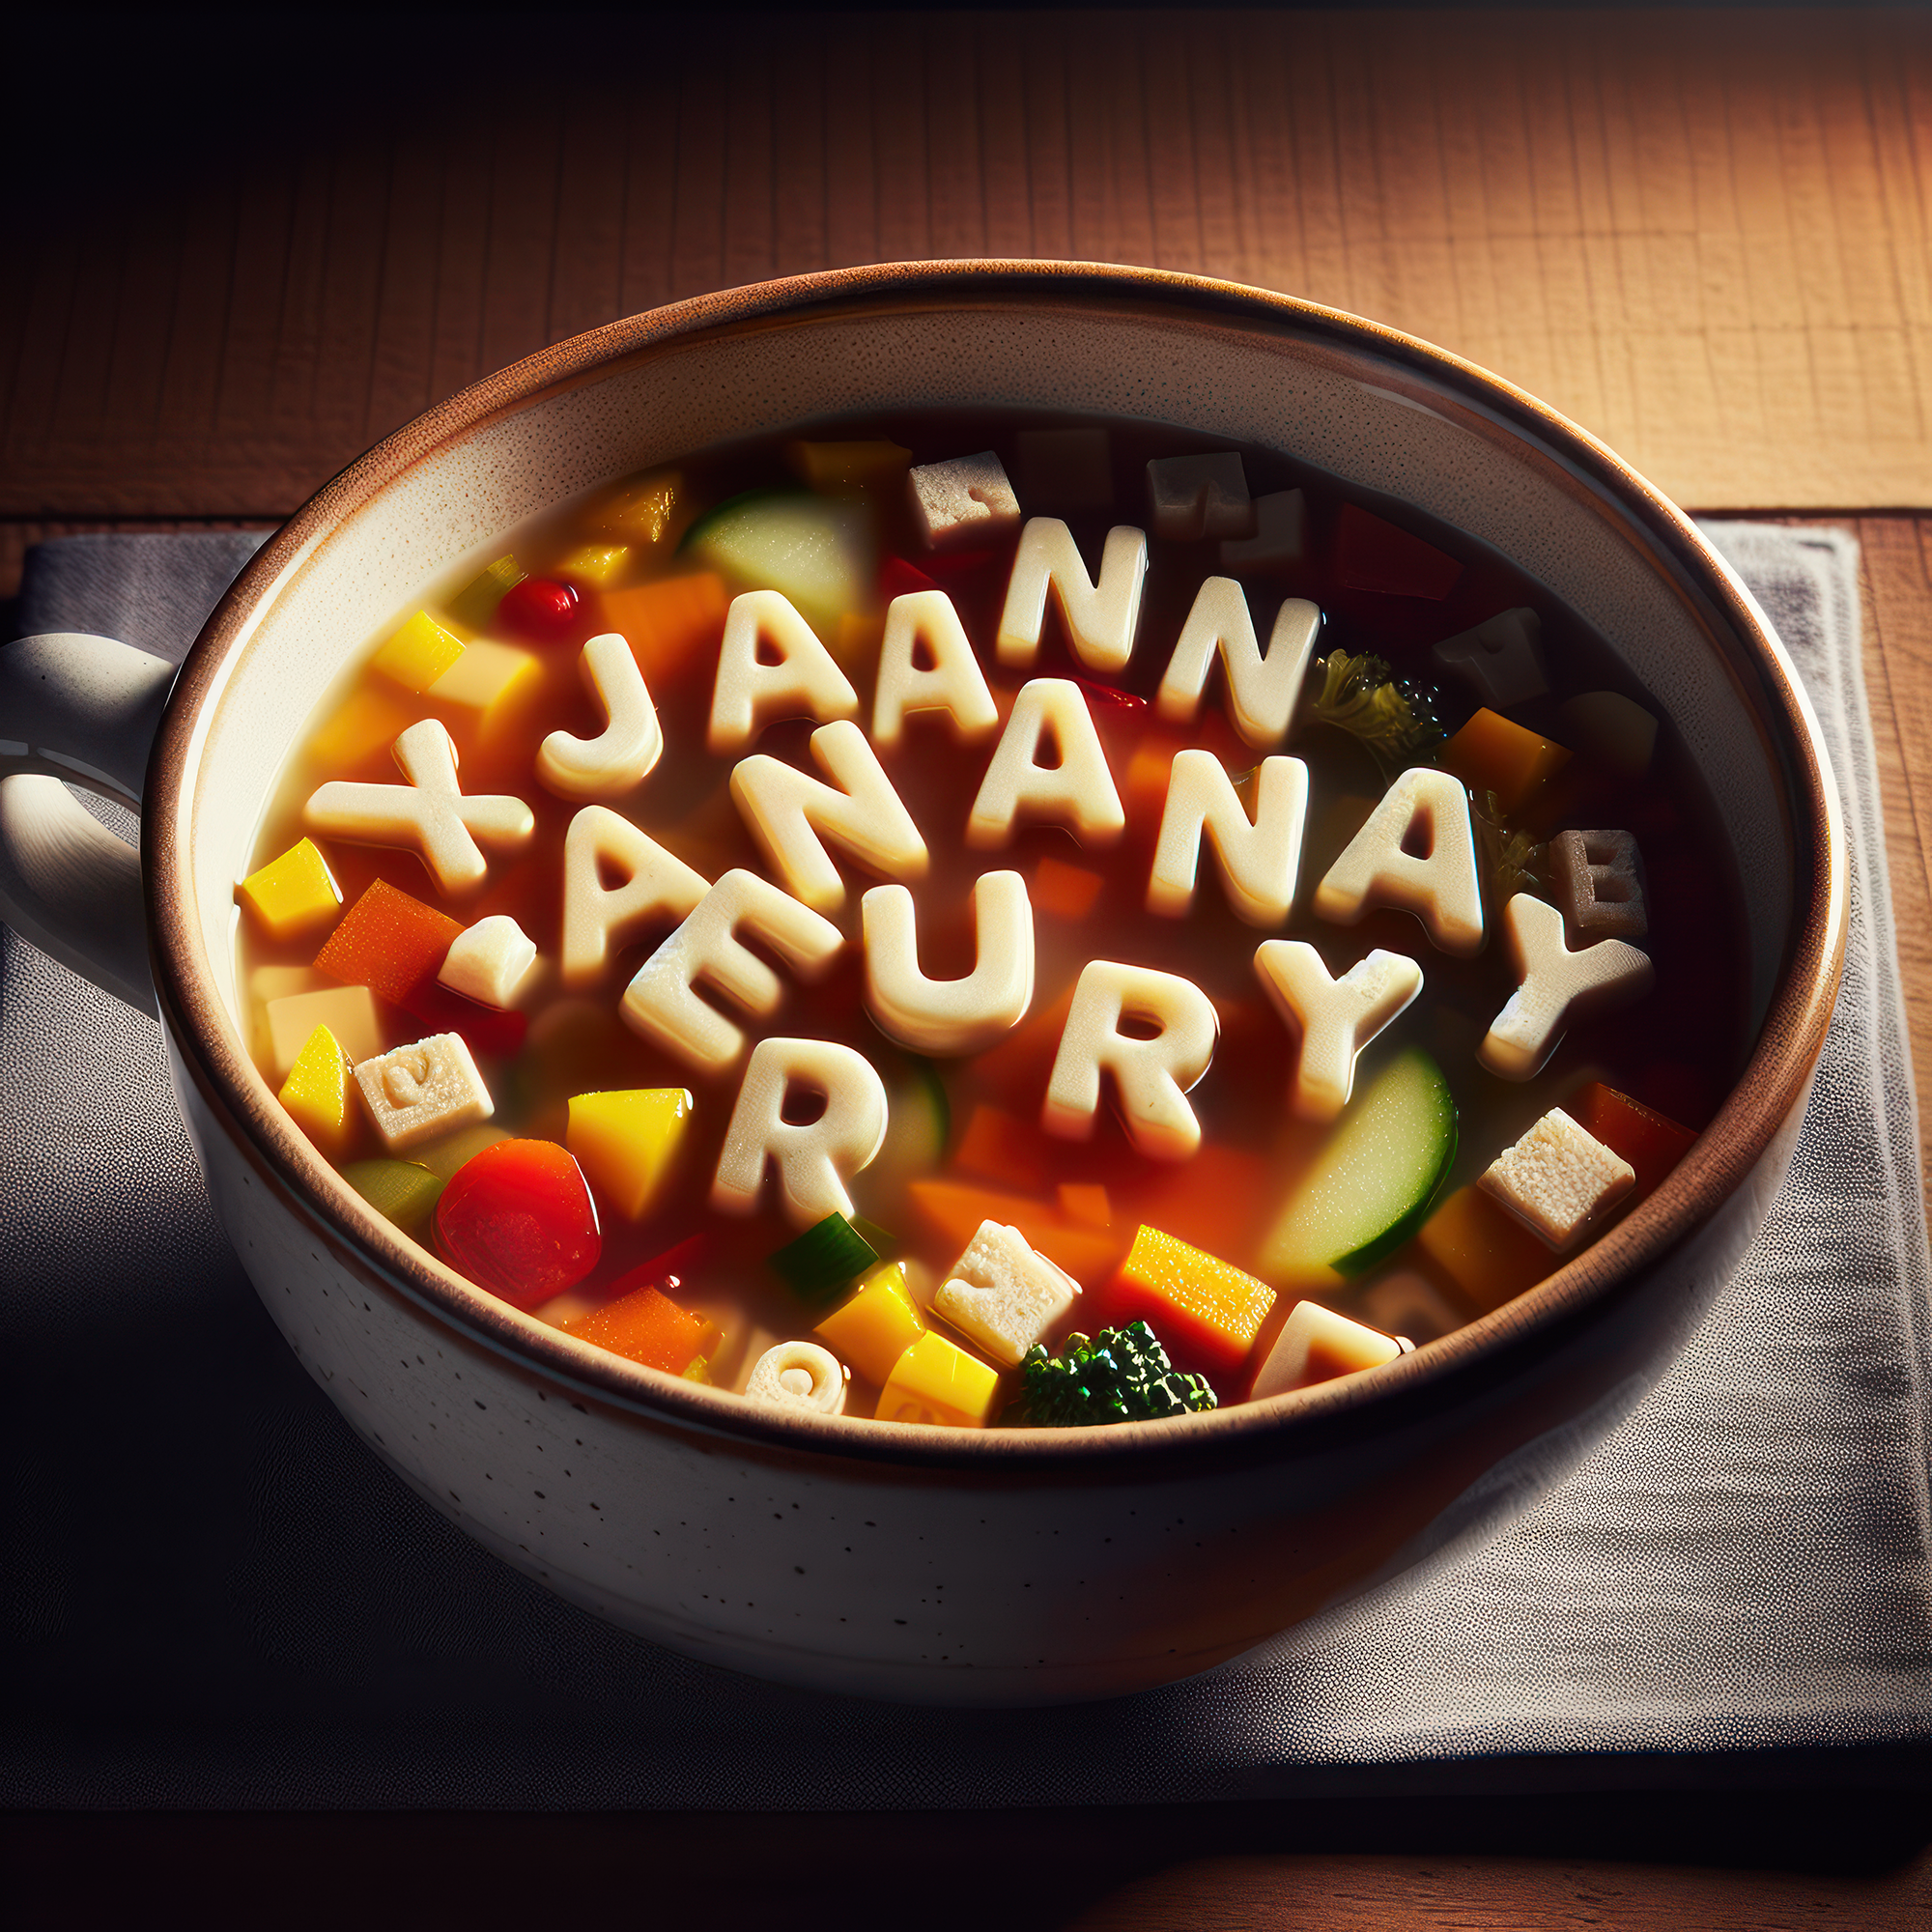 Jannauary Soup!